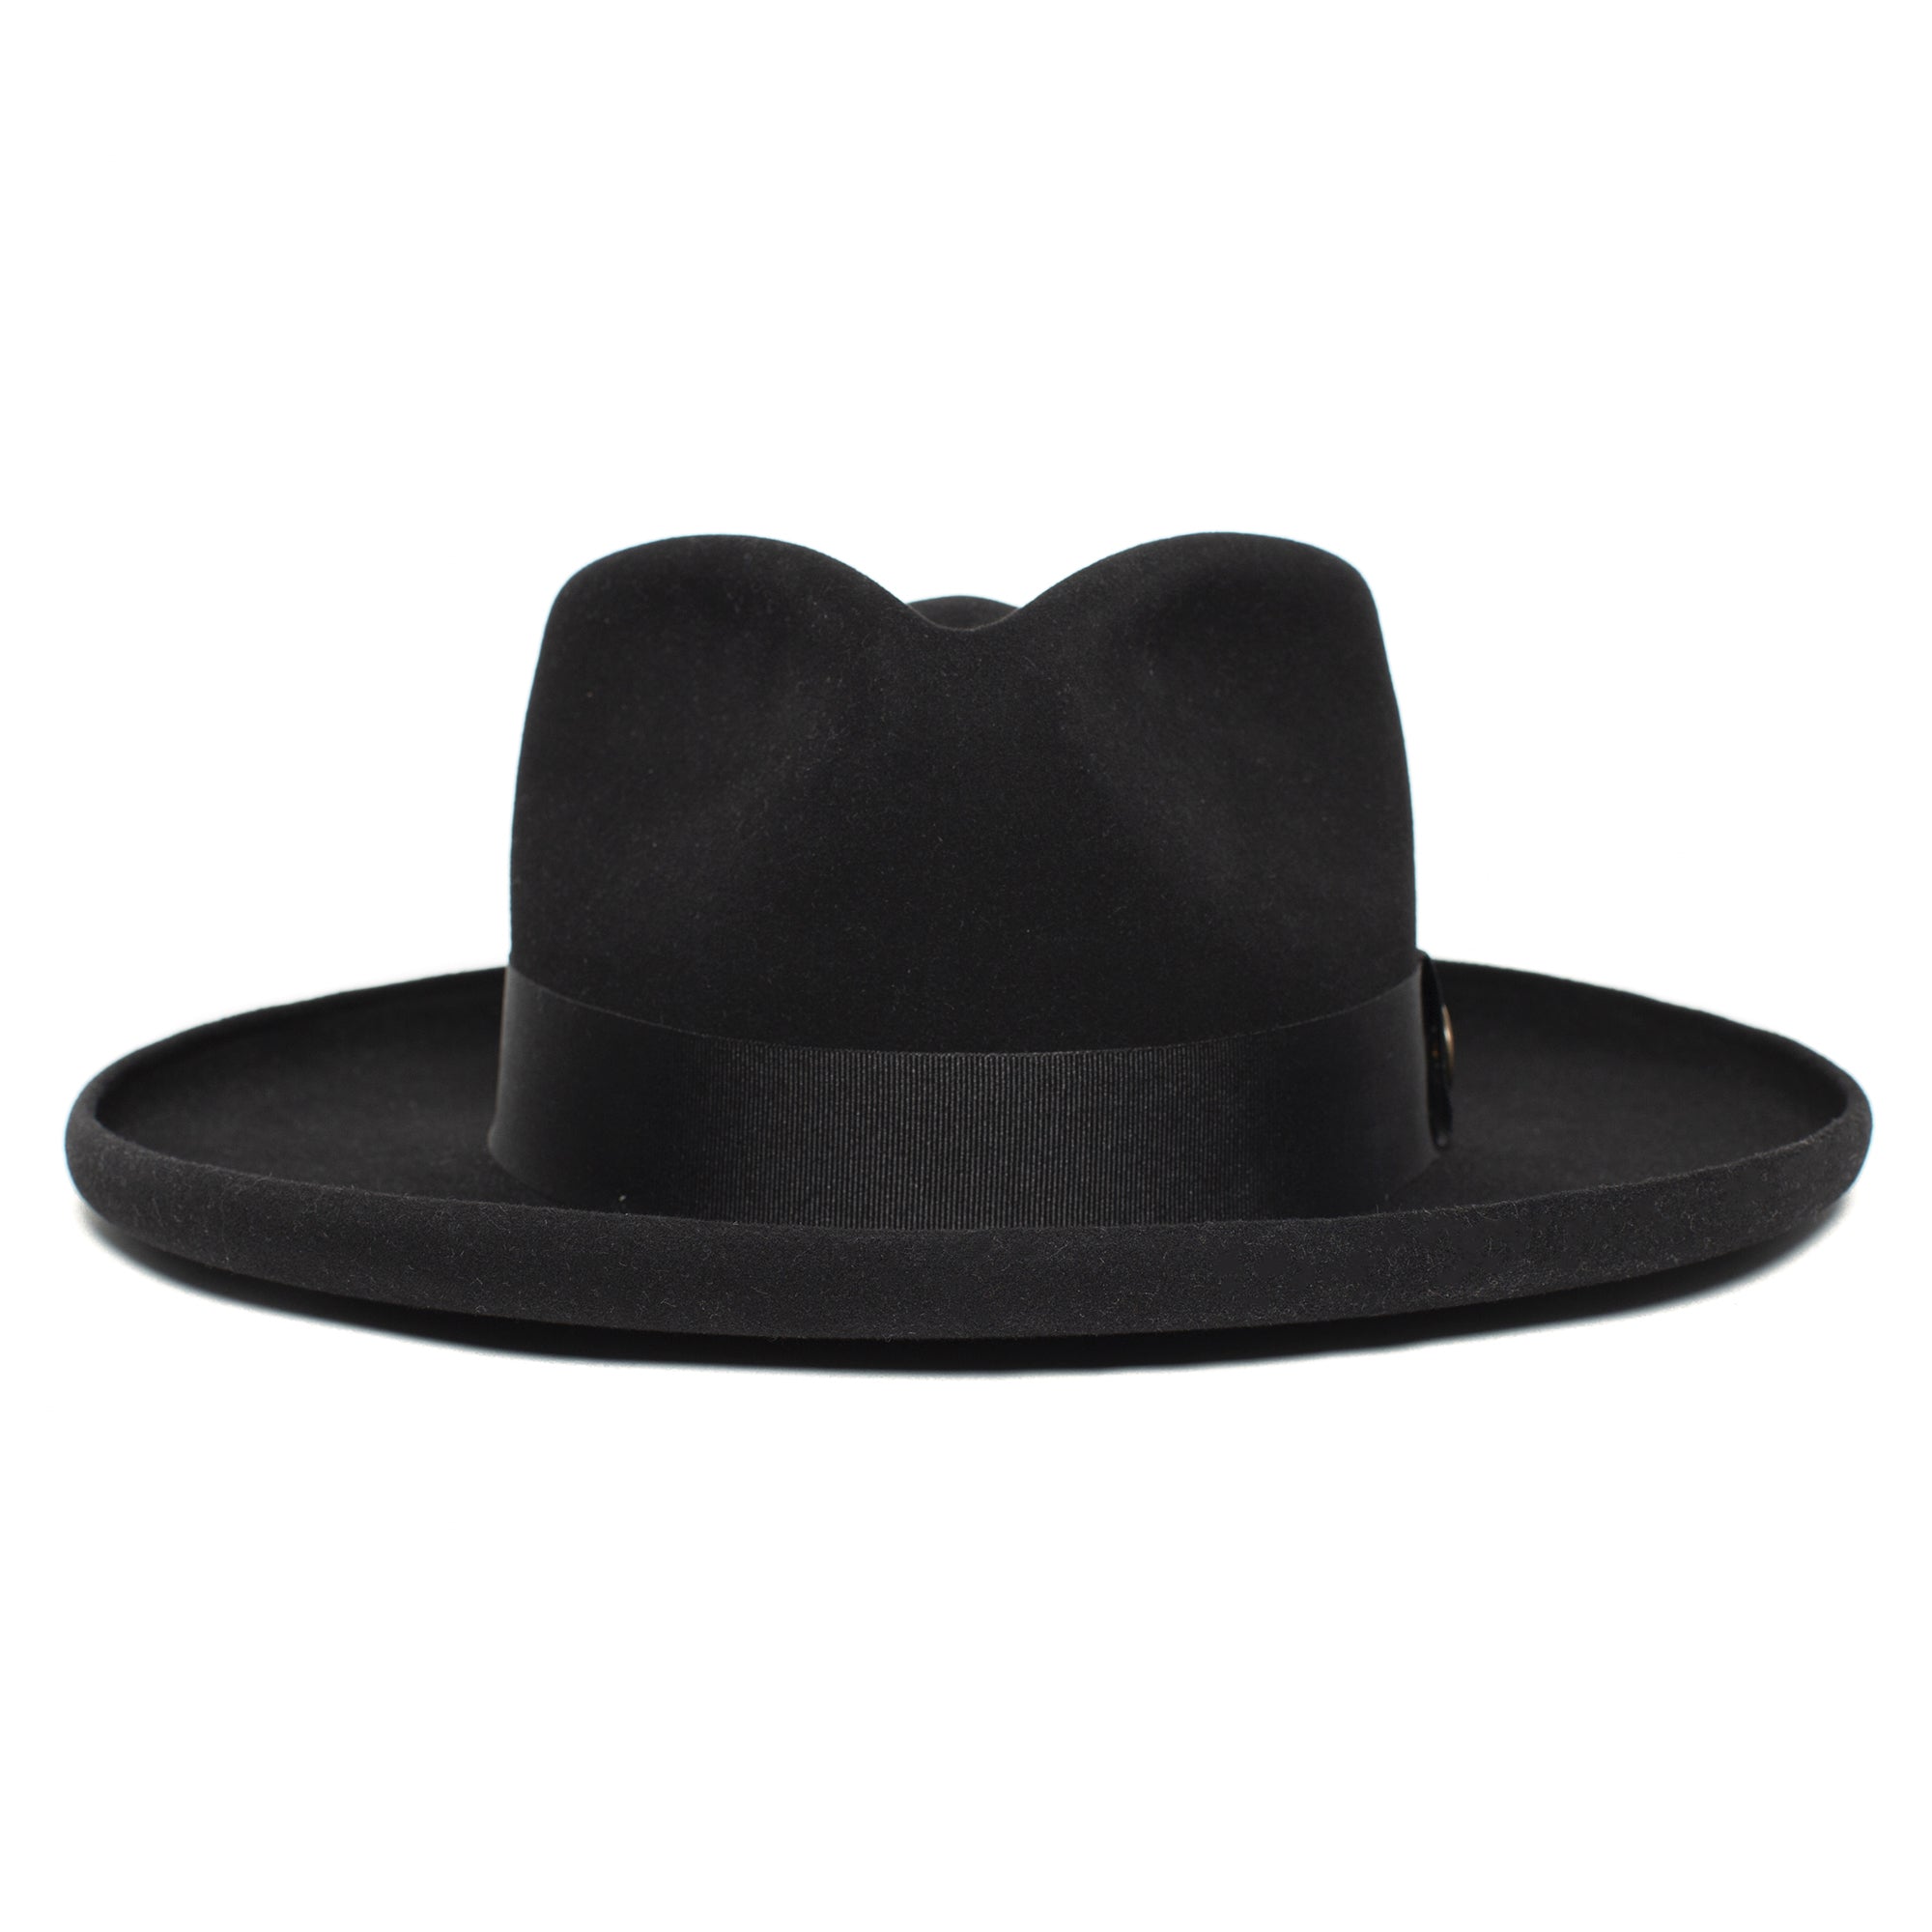 Goorin Colonel Pierce Fedora Hat in Chocolate/Black, Size 2XL